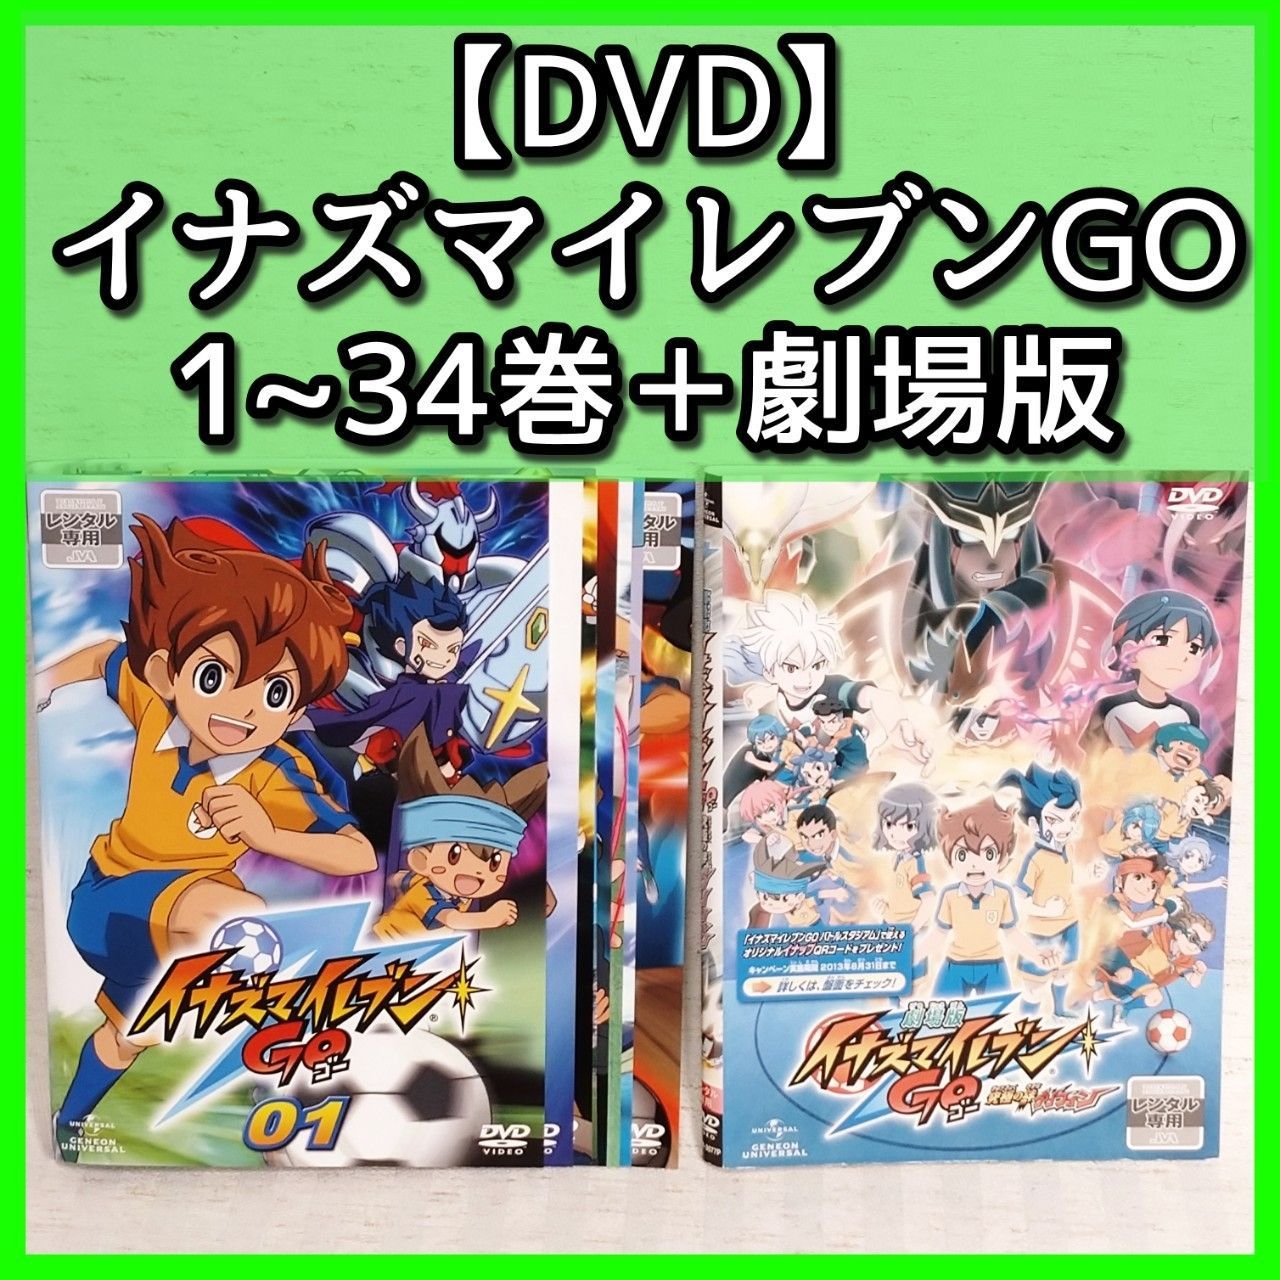 期間限定生産版】イナズマイレブン GO DVD BOX 劇場版 セット - アニメ